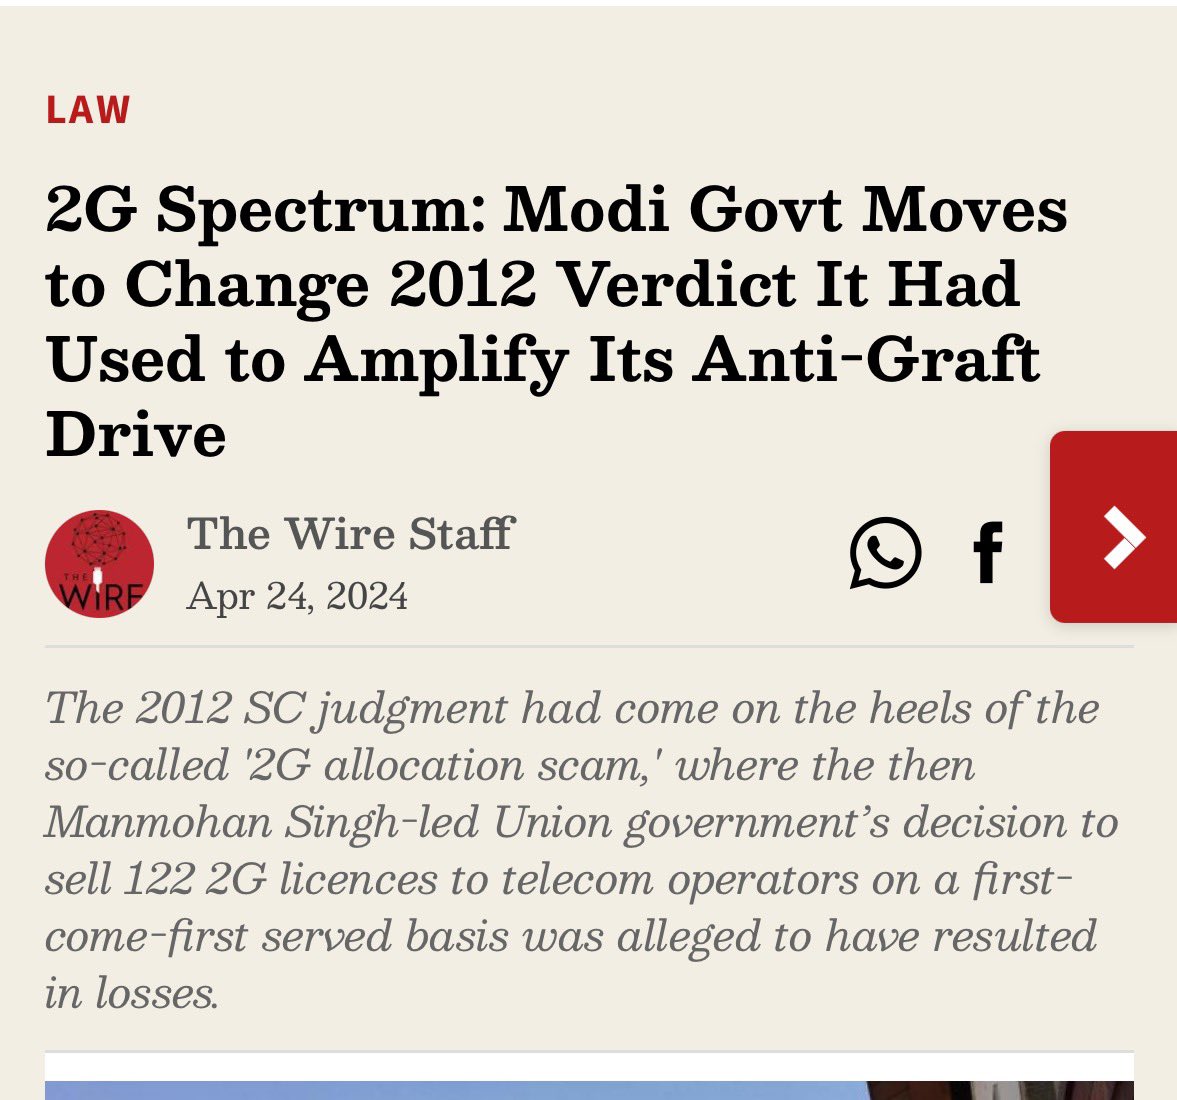 मोदानी सरकार और भ्रष्ट BJP के पाखंड की कोई सीमा नहीं है। डॉ. मनमोहन सिंह के कार्यकाल के दौरान, शोर मचा कर जिस 2G स्पेक्ट्रम के आवंटन को 'घोटाला' कहा था। अब, इसके विपरीत - सरकार ने नीलामी के बिना, जिसे चाहें उसे स्पेक्ट्रम देने की अनुमति के लिए SC में अर्जी दी है।